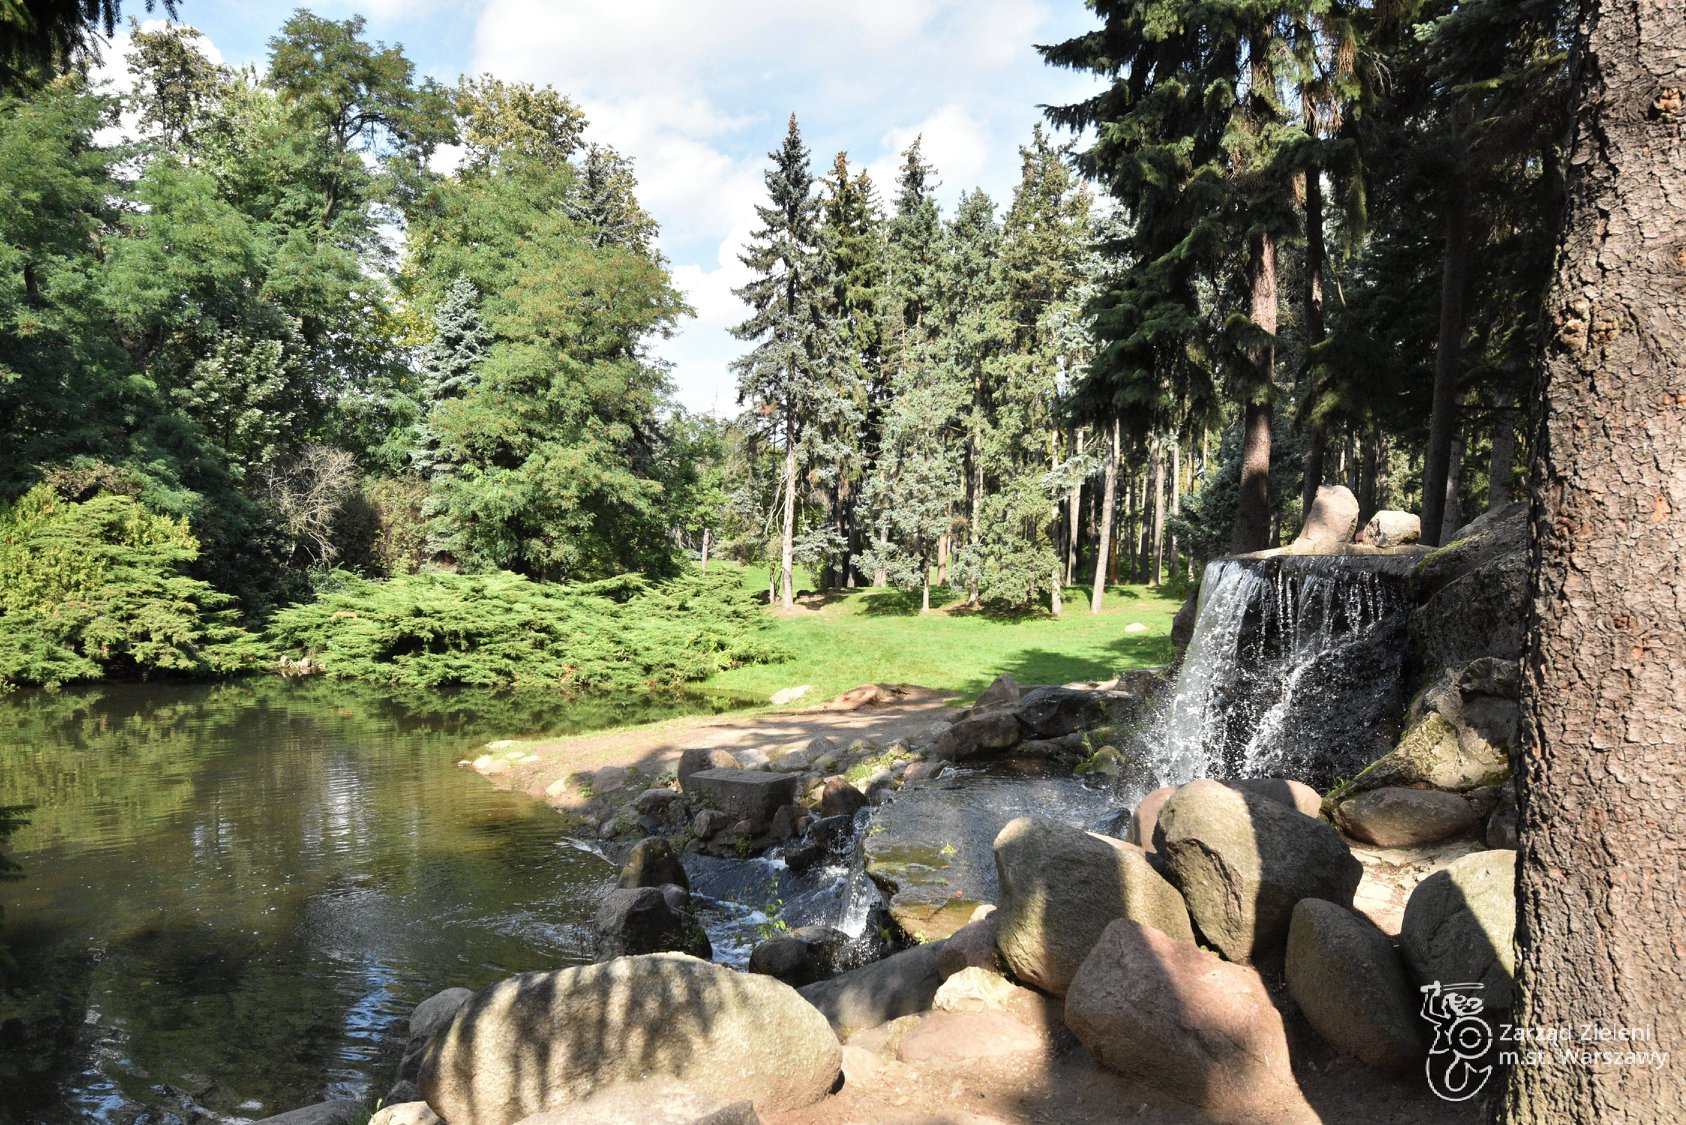 Kaskada i staw w Parku Skaryszewskim, woda spływa po skałach, w tle zieleń drzew